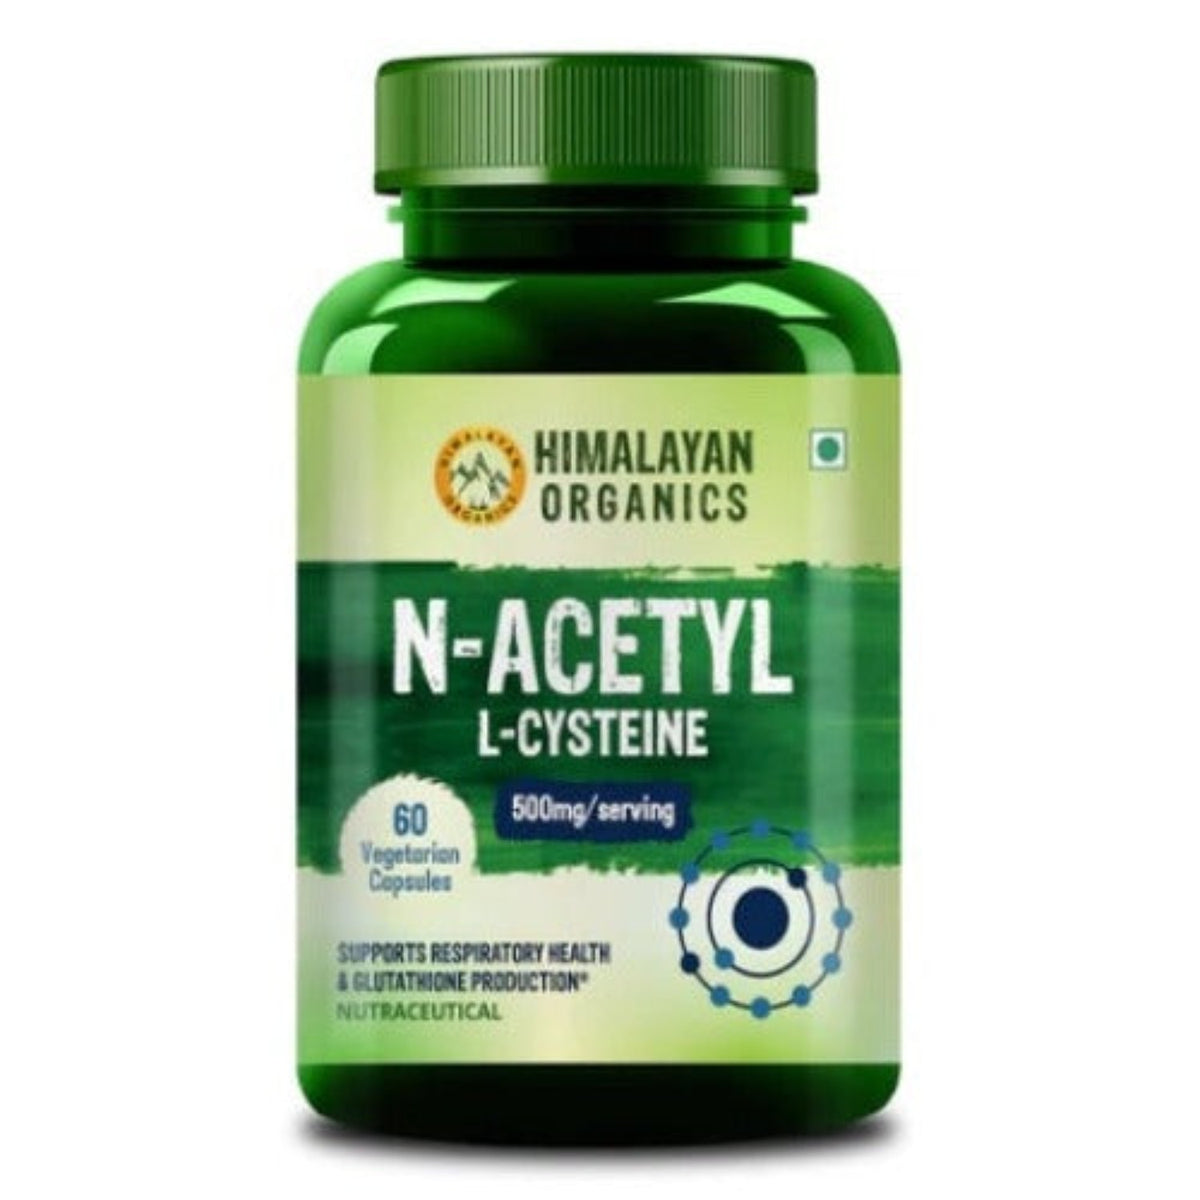 Himalayan Organics N-Acetyl L-Cystein, gentechnikfrei, glutenfrei, unterstützt die Gesundheit der Atemwege und die Glutathionproduktion (60 Kapseln)